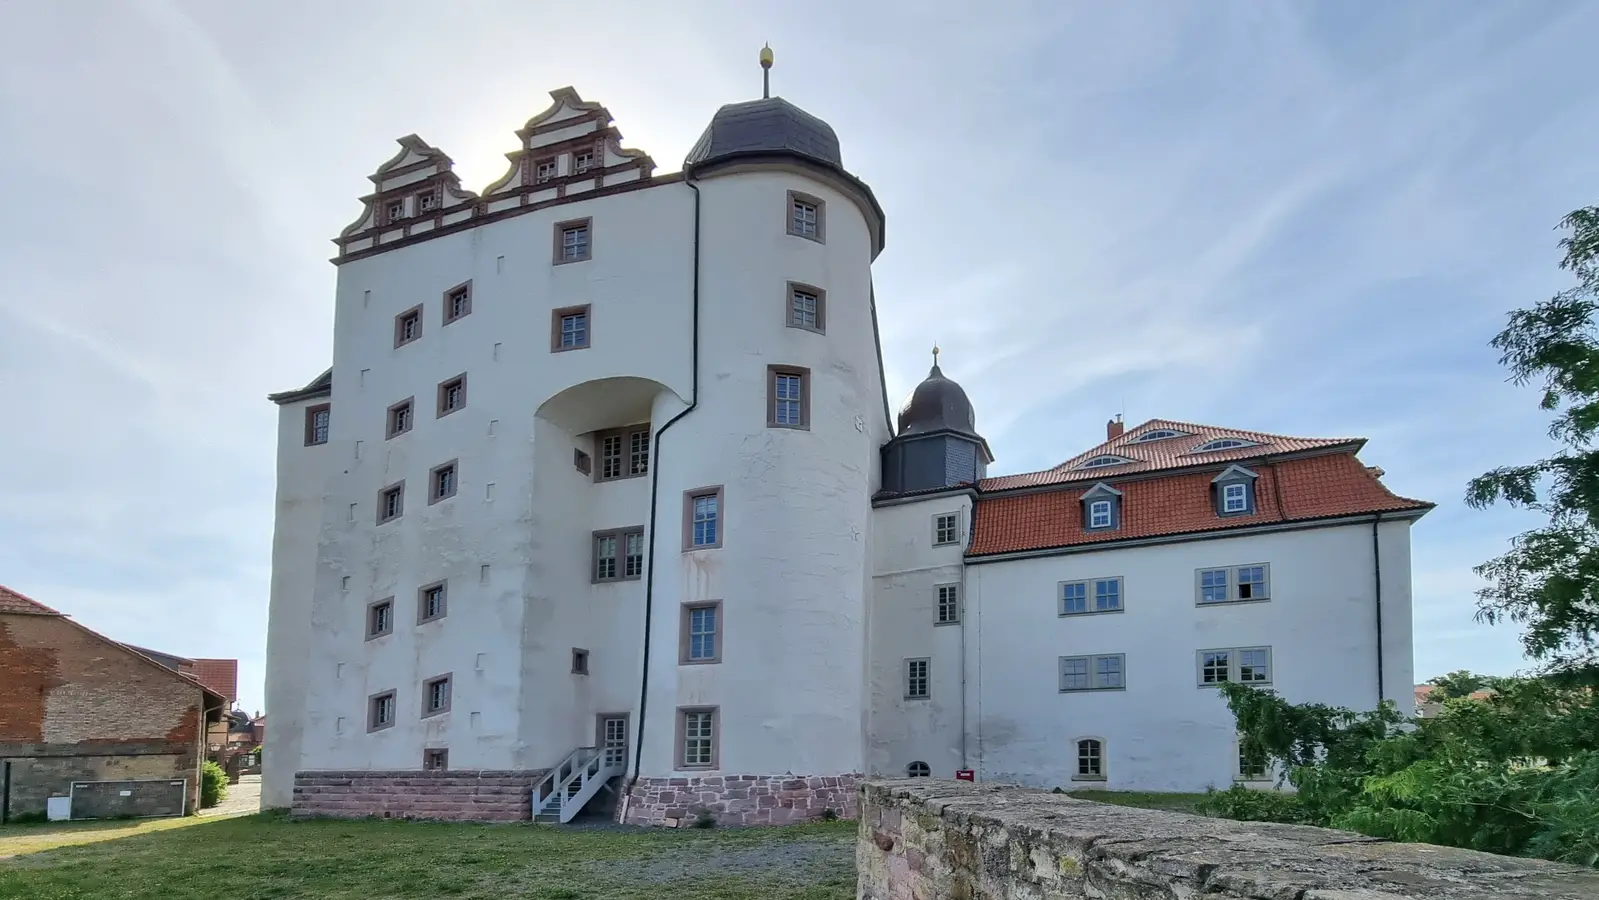 Museen im Südharz, Schlösser im Harz, 
Schloss Heringen, ältester Ort in Thüringen, Ausflugsziele Harz